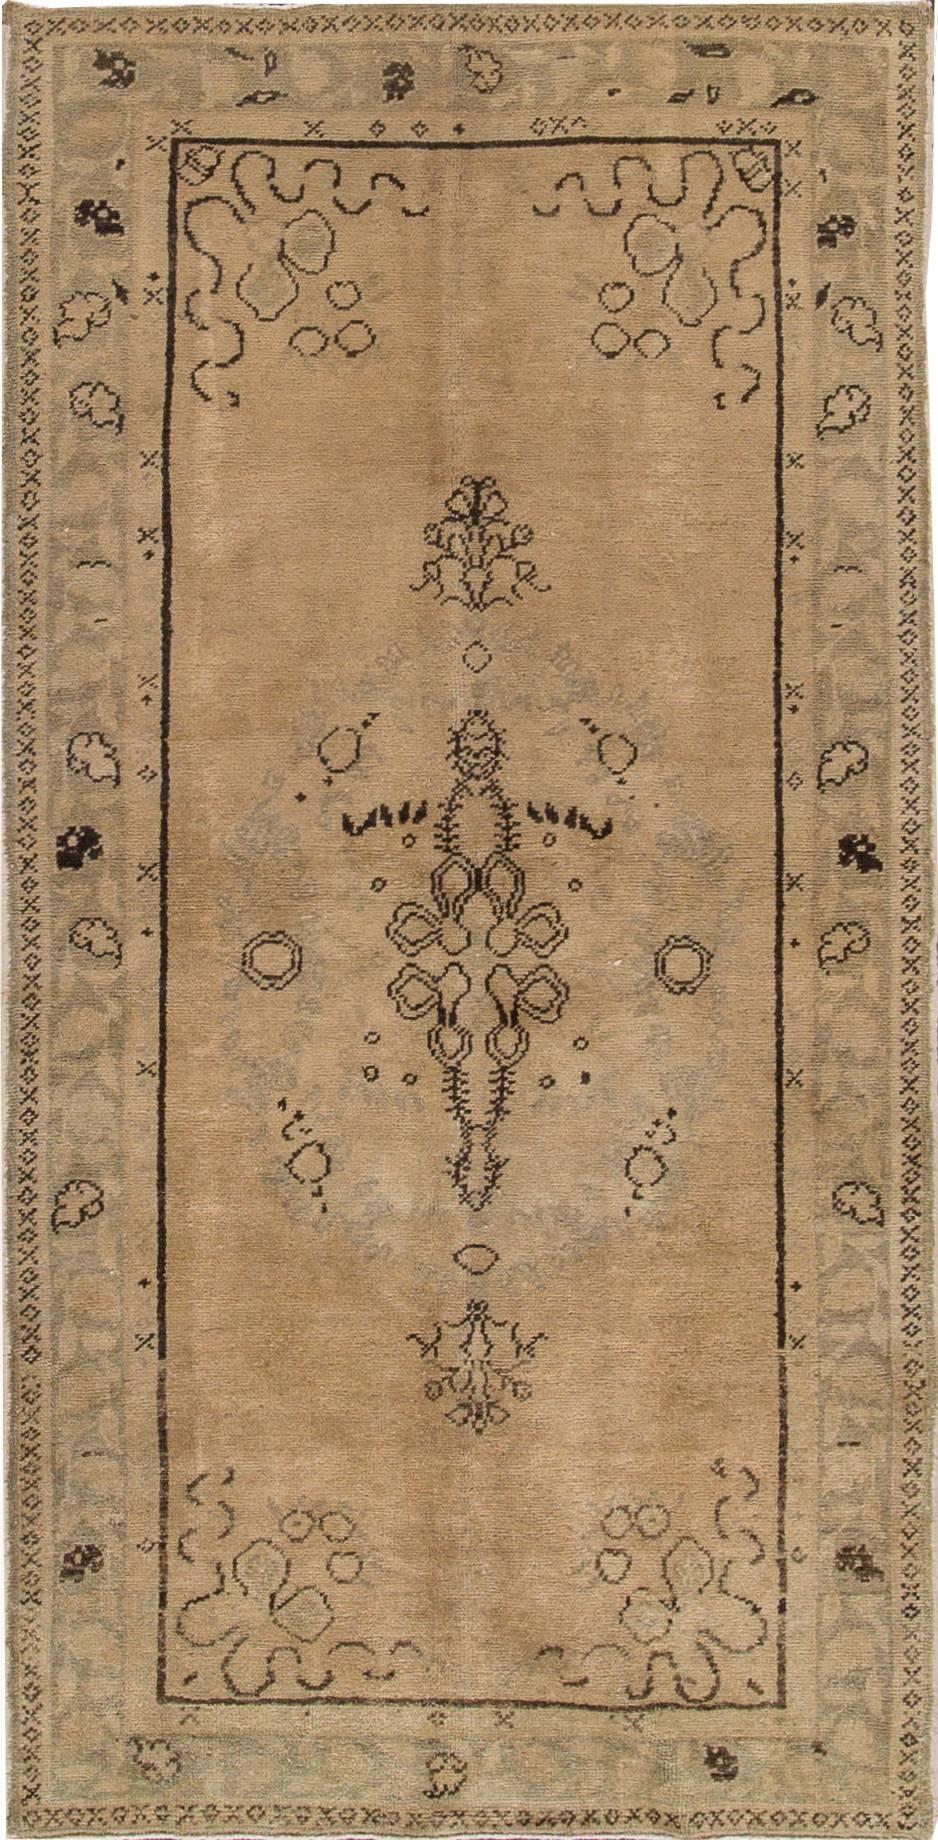 türkischer Khotan-Teppich des 20. Jahrhunderts mit beigefarbenem Feld und Medaillonmuster. Misst ungefähr 3 Fuß 3 Zoll mal 6 Fuß 5 Zoll.